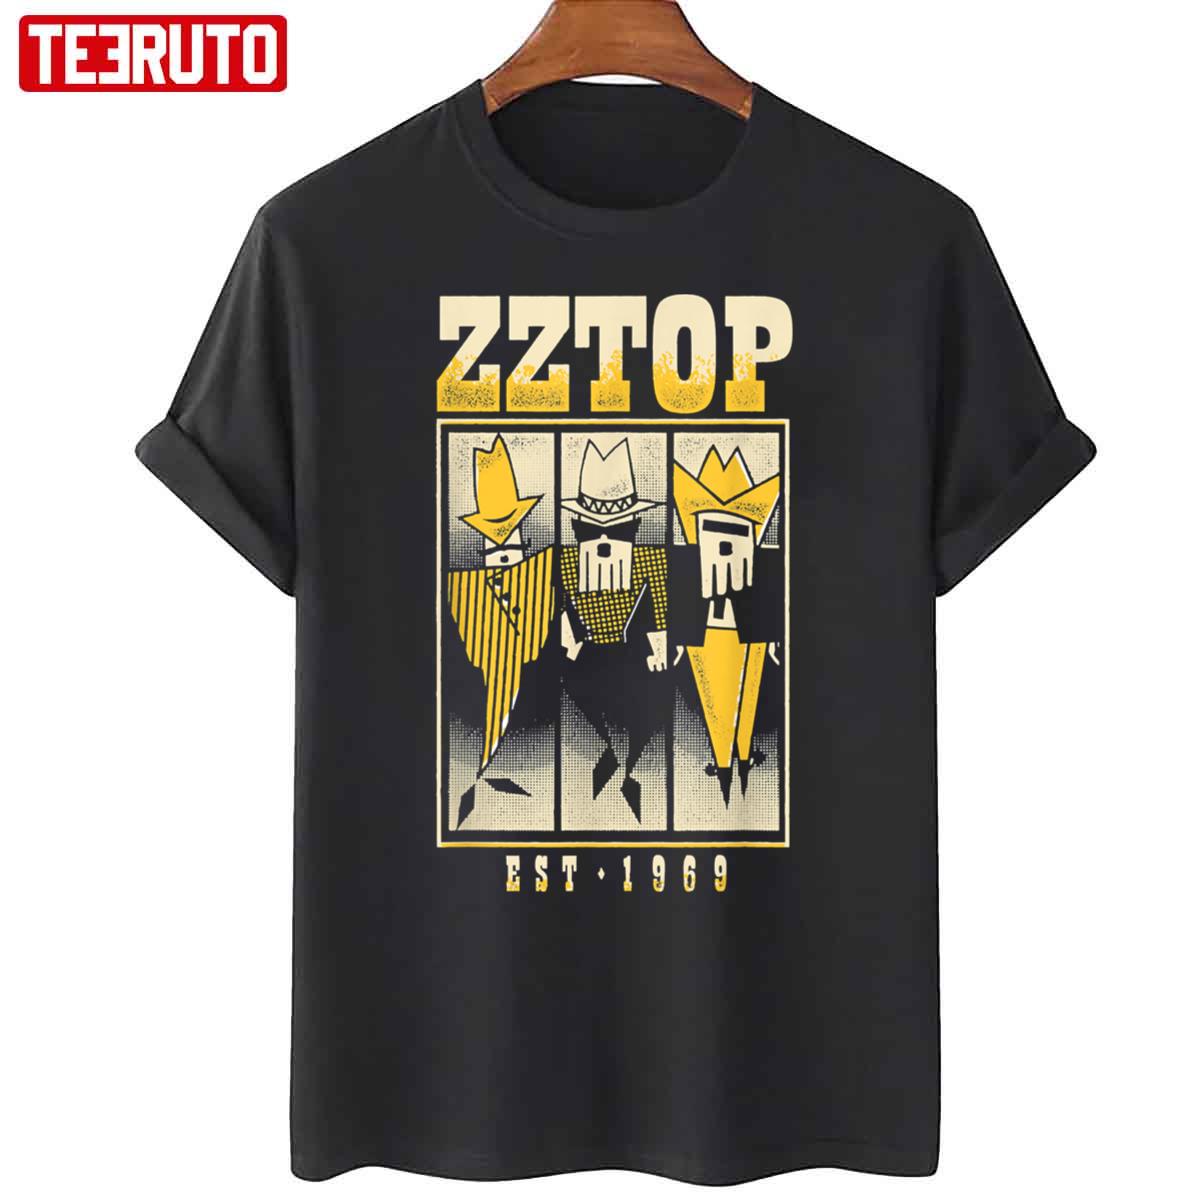 ZZ Top Band EST 1969 Vintage Artwork Unisex T-Shirt